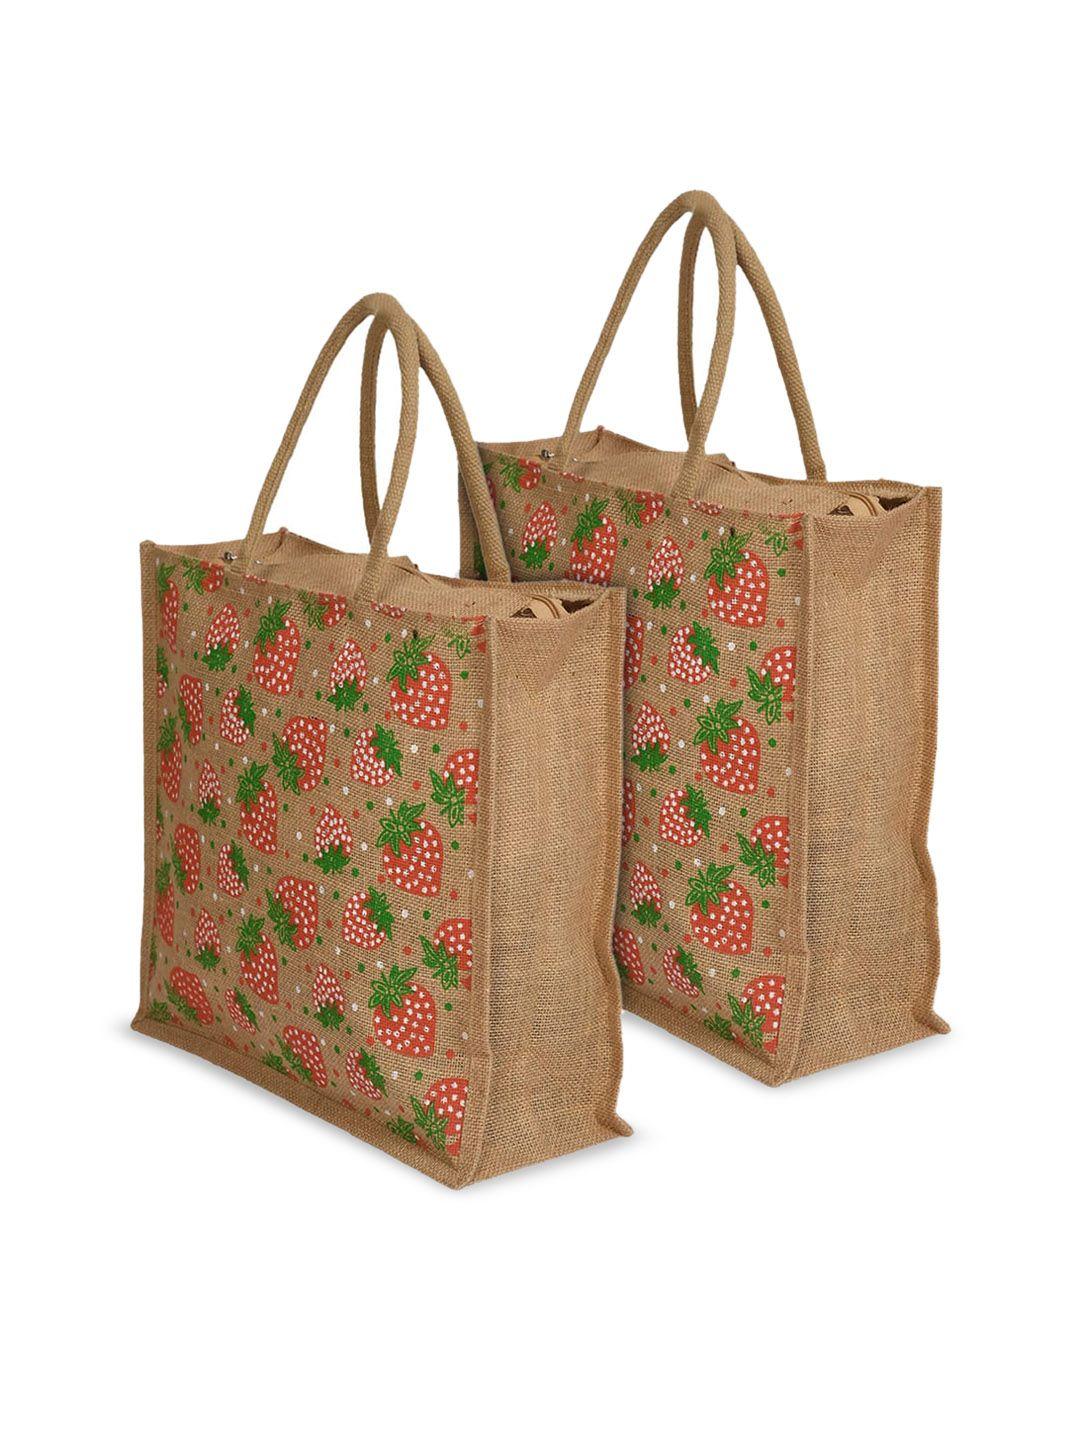 kuber industries pack of 2 floral printed structured jute handheld bag